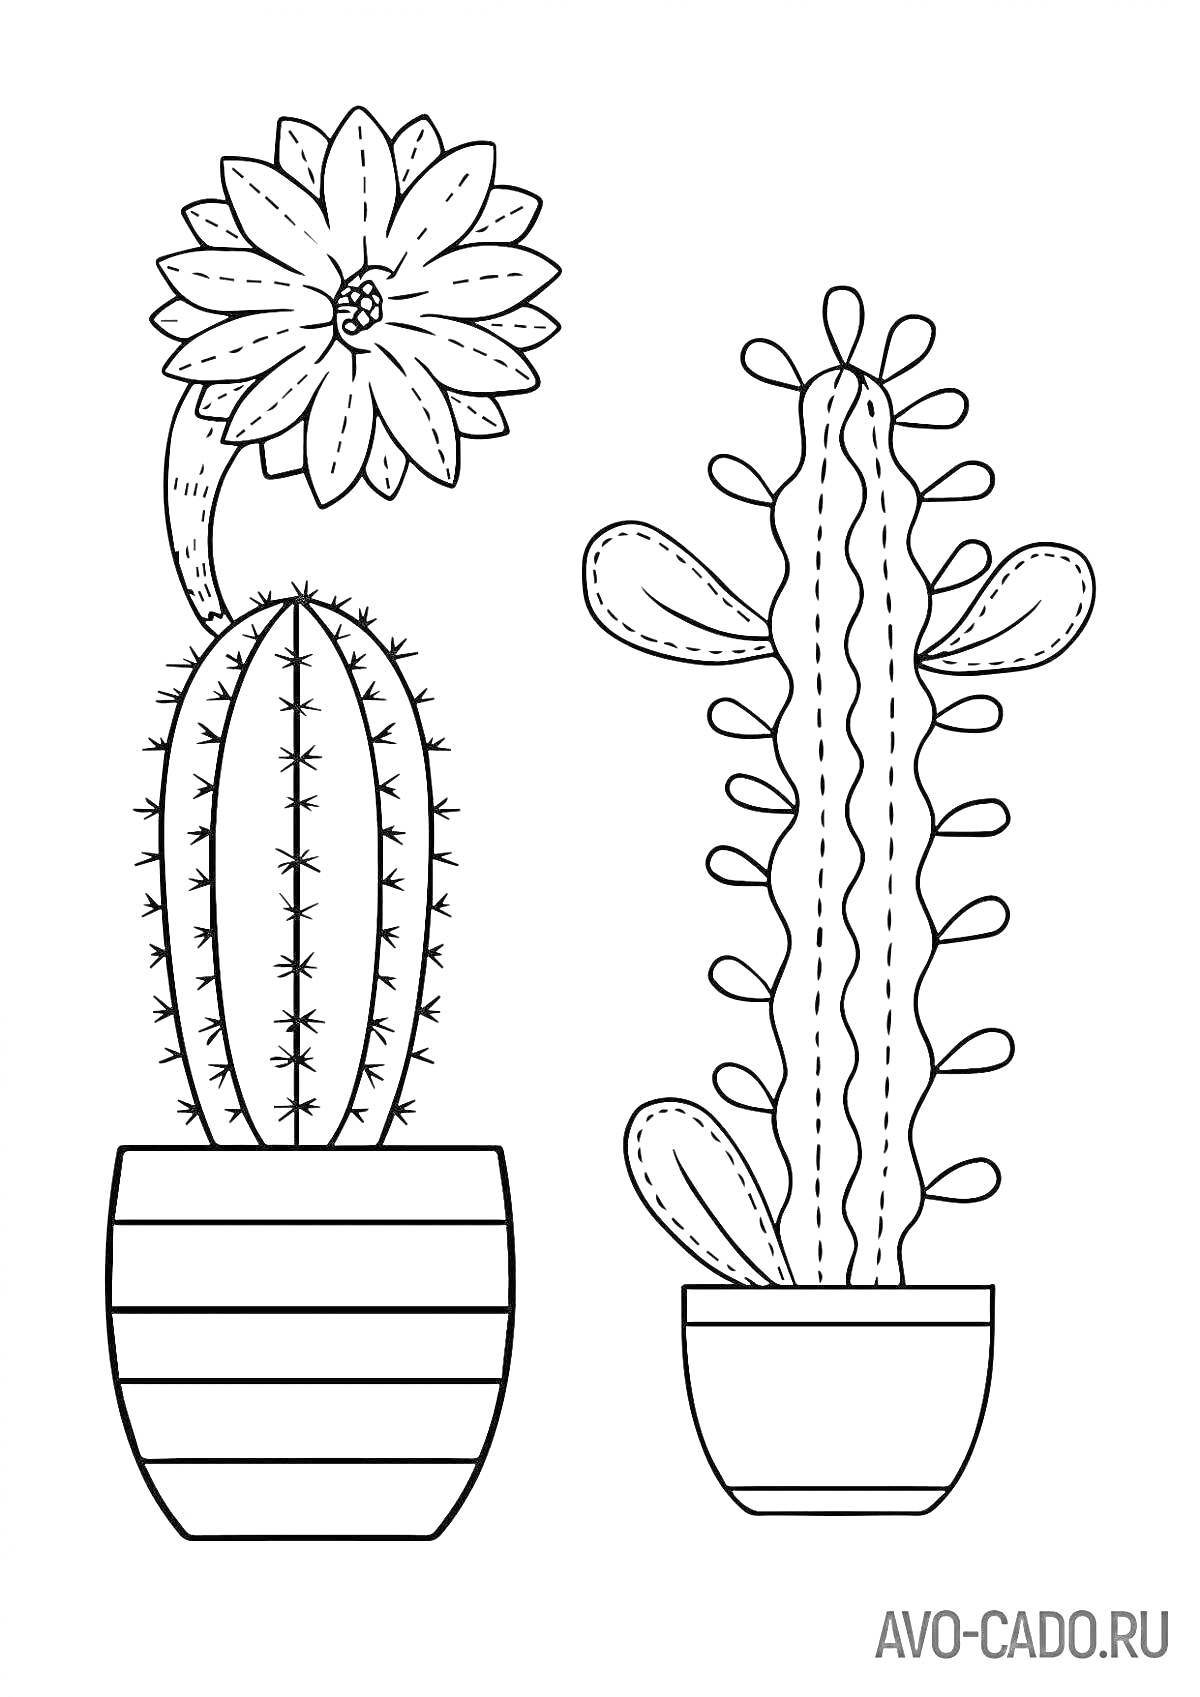 Раскраска Раскраска с кактусами в цветочных горшках, один с цветком, другой с маленькими отростками